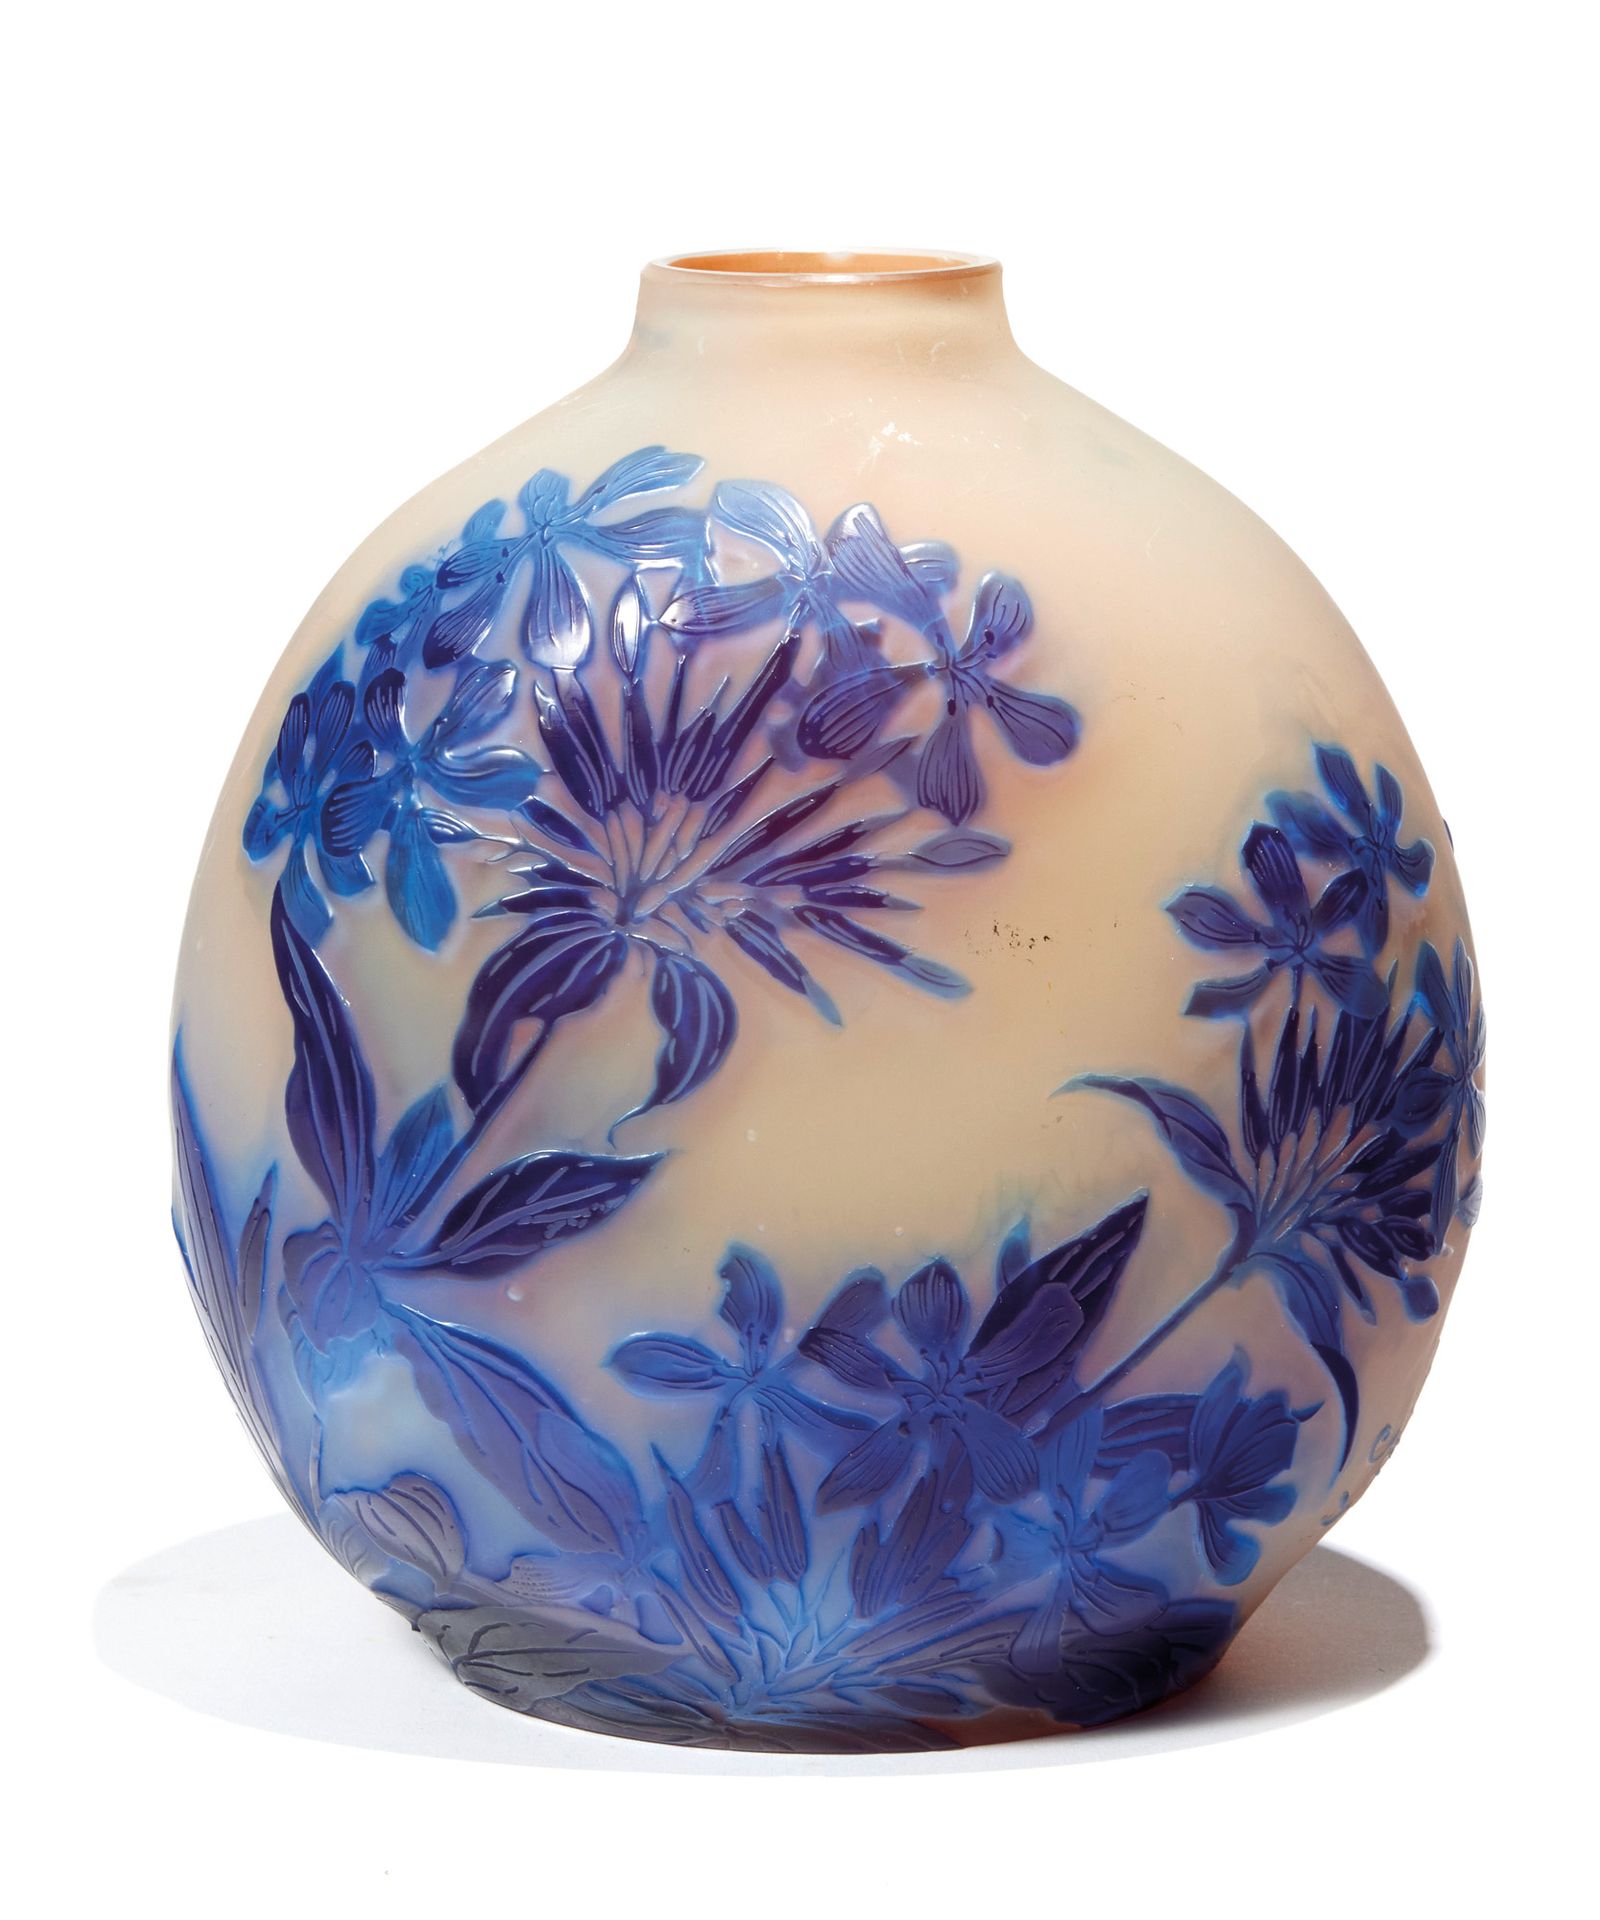 ÉTABLISSEMENTS GALLÉ GALLÉ ESTABLISHMENTS

A multi-layered glass gourd vase with&hellip;